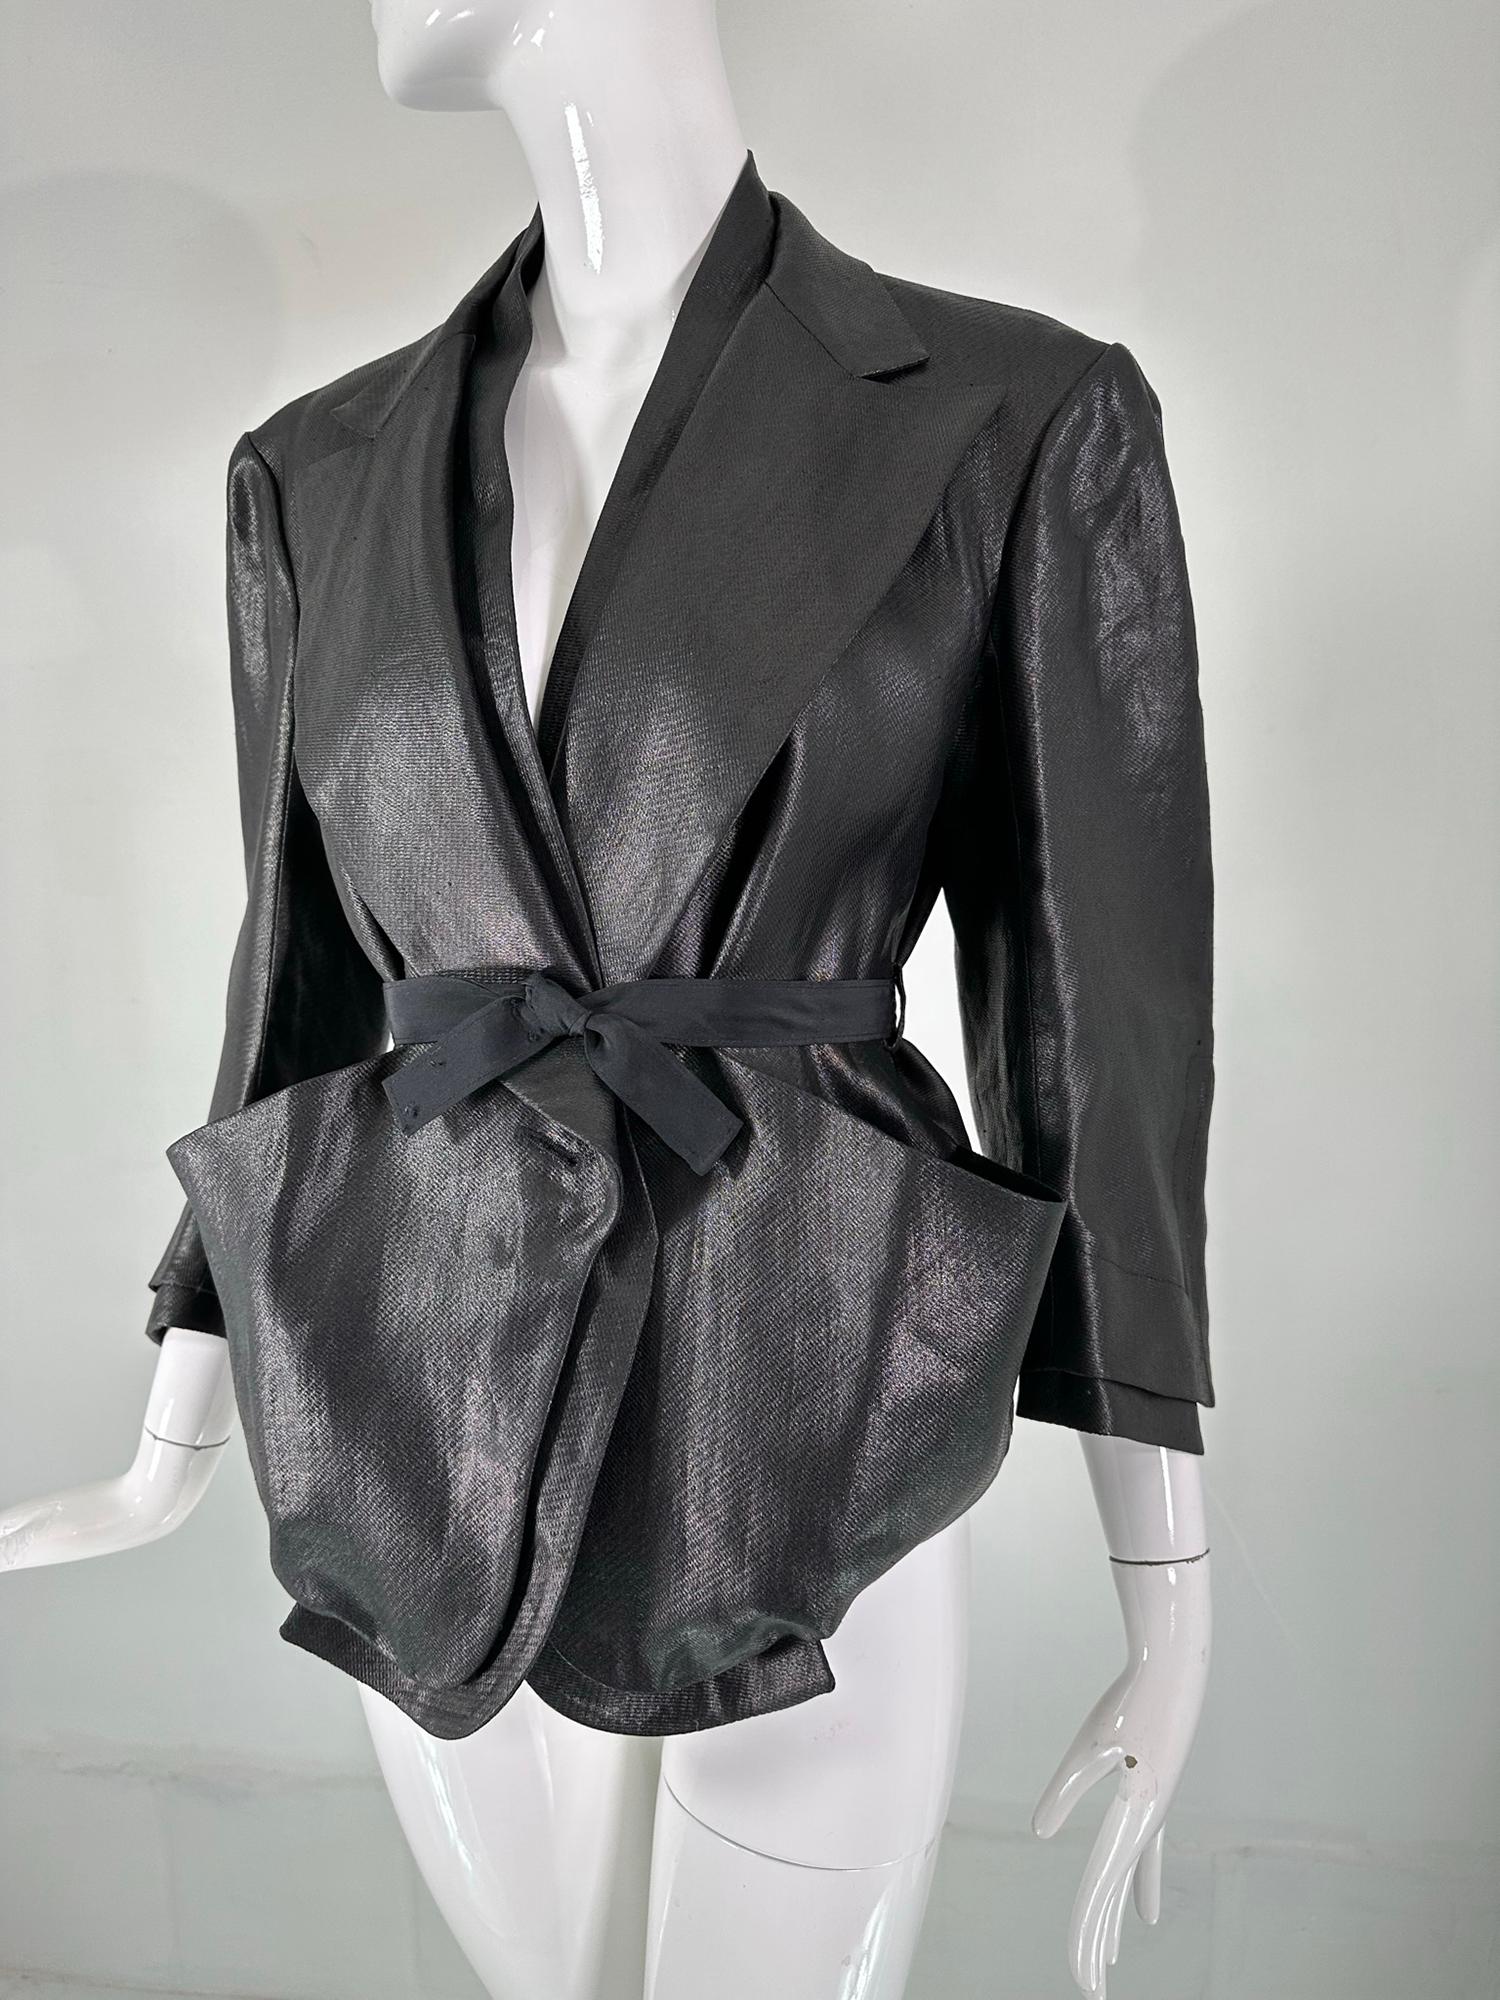 Sonia Rykiel, schwarzes, glasiertes Leinen, große Tasche, Knopfleiste, Gürtel, Kurzjacke. Dies ist eine besondere Jacke mit viel Stil. Der Stoff sieht aus wie Leder, aber bei genauem Hinsehen erkennt man die Schönheit der Verarbeitung des Stoffes.